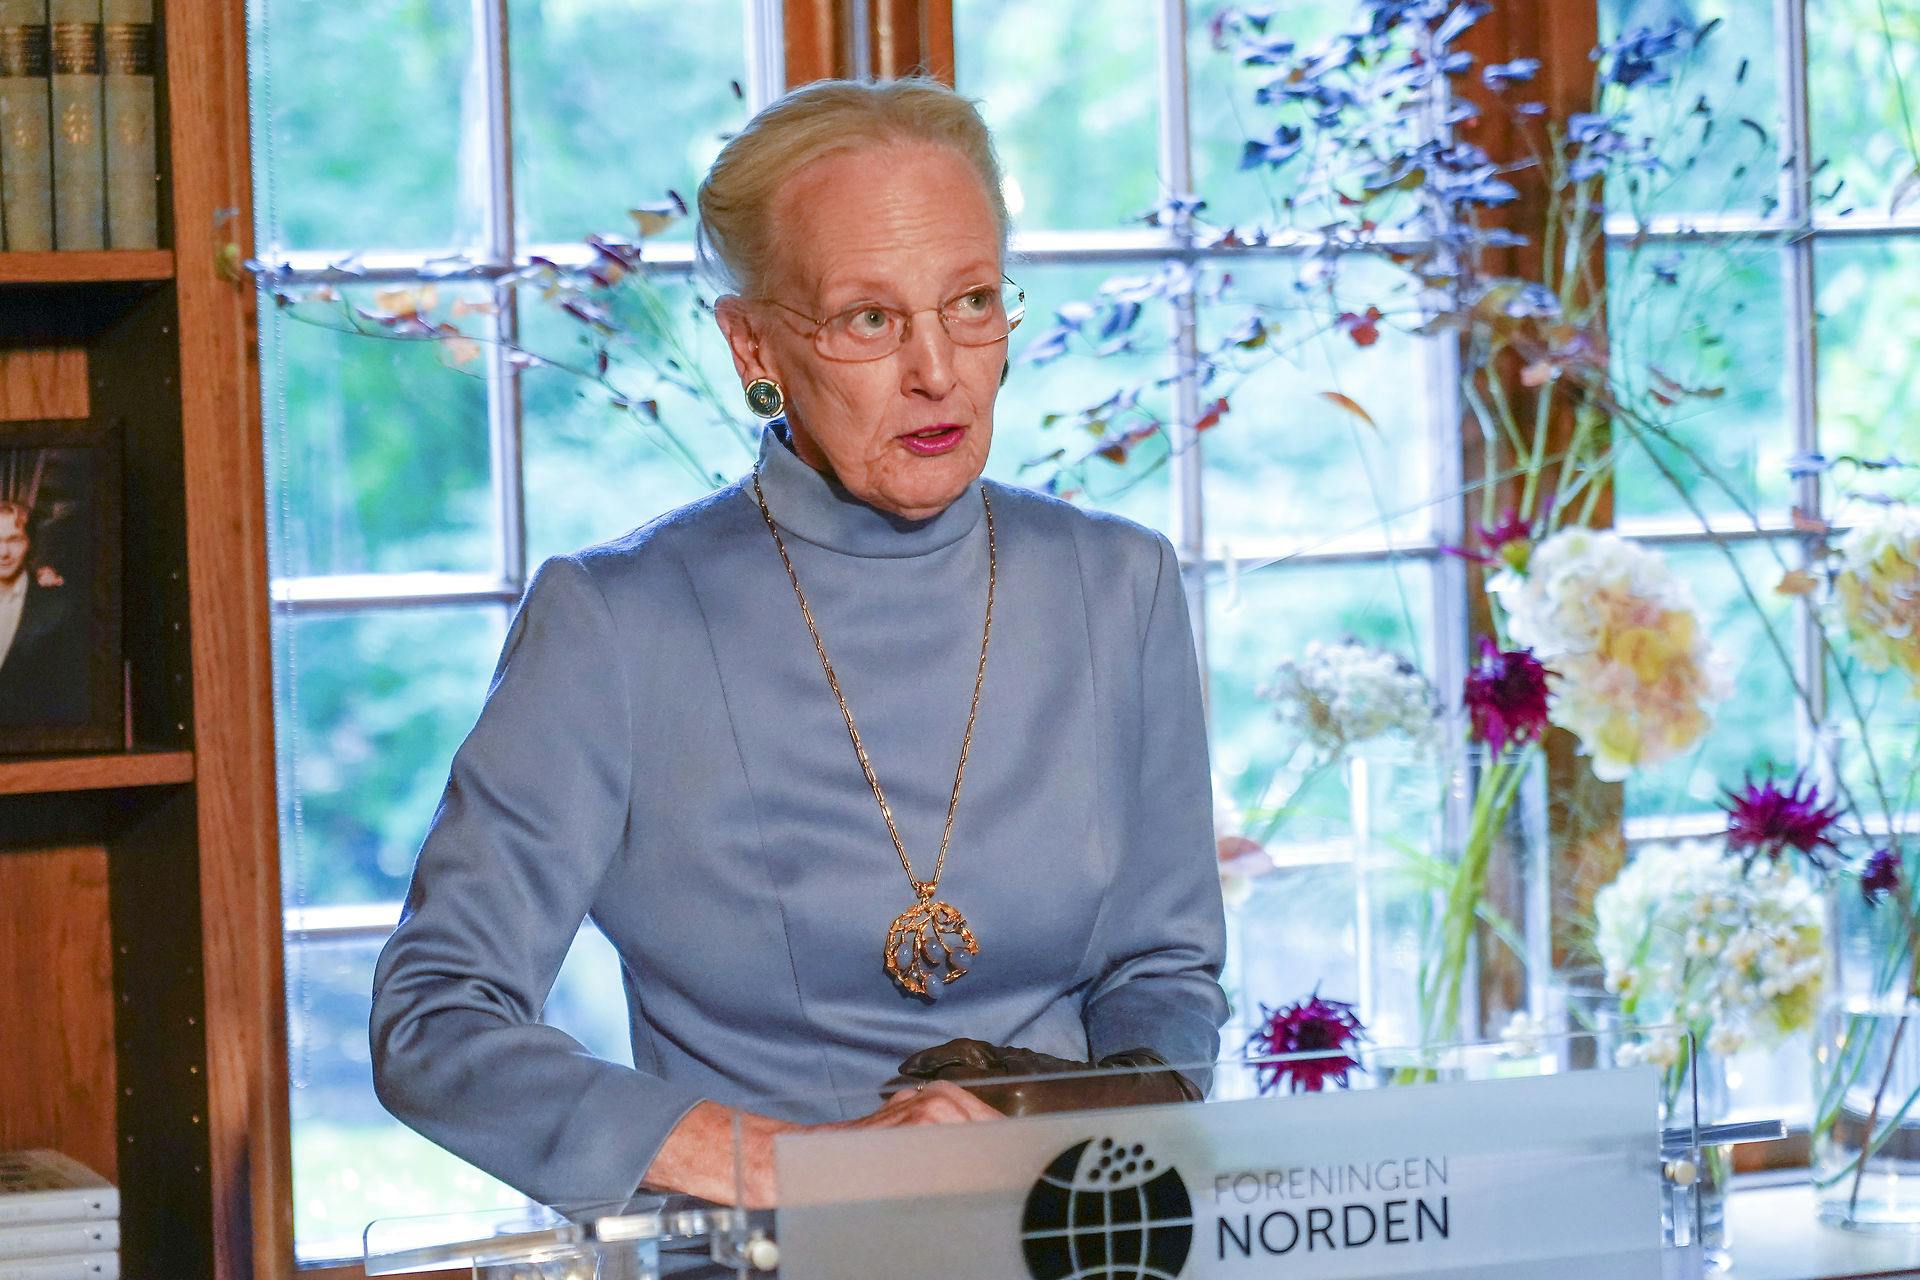 Dronning Margrethe er ikke i kridthuset hos prins Joachims familie.